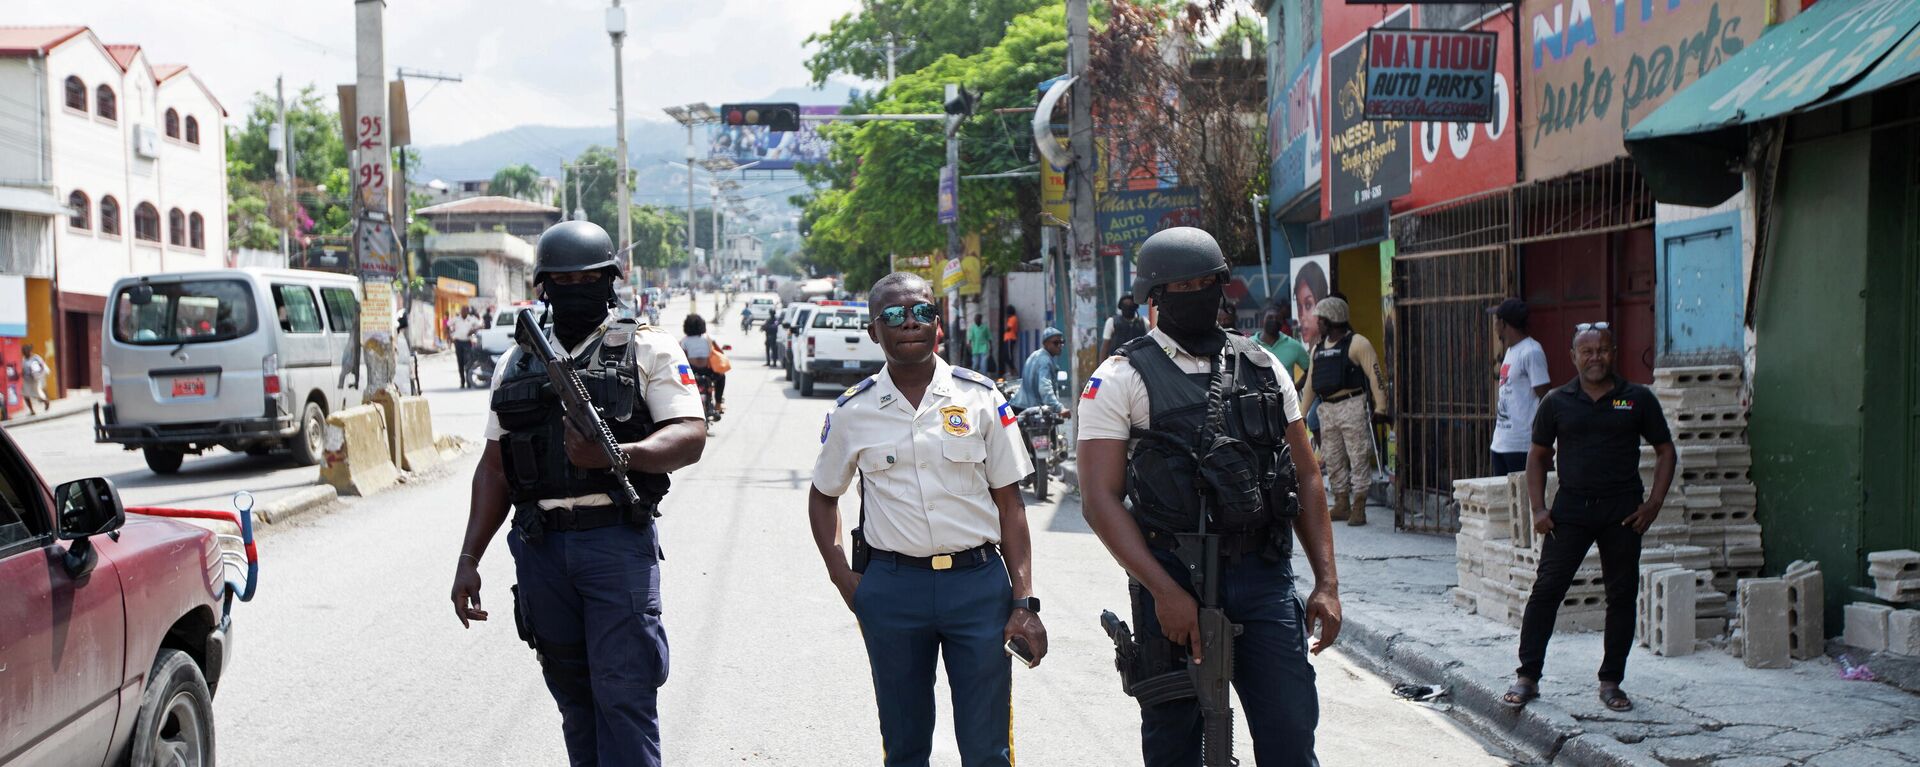 Policía en una calle de Puerto Príncipe, Haití - Sputnik Mundo, 1920, 18.10.2021